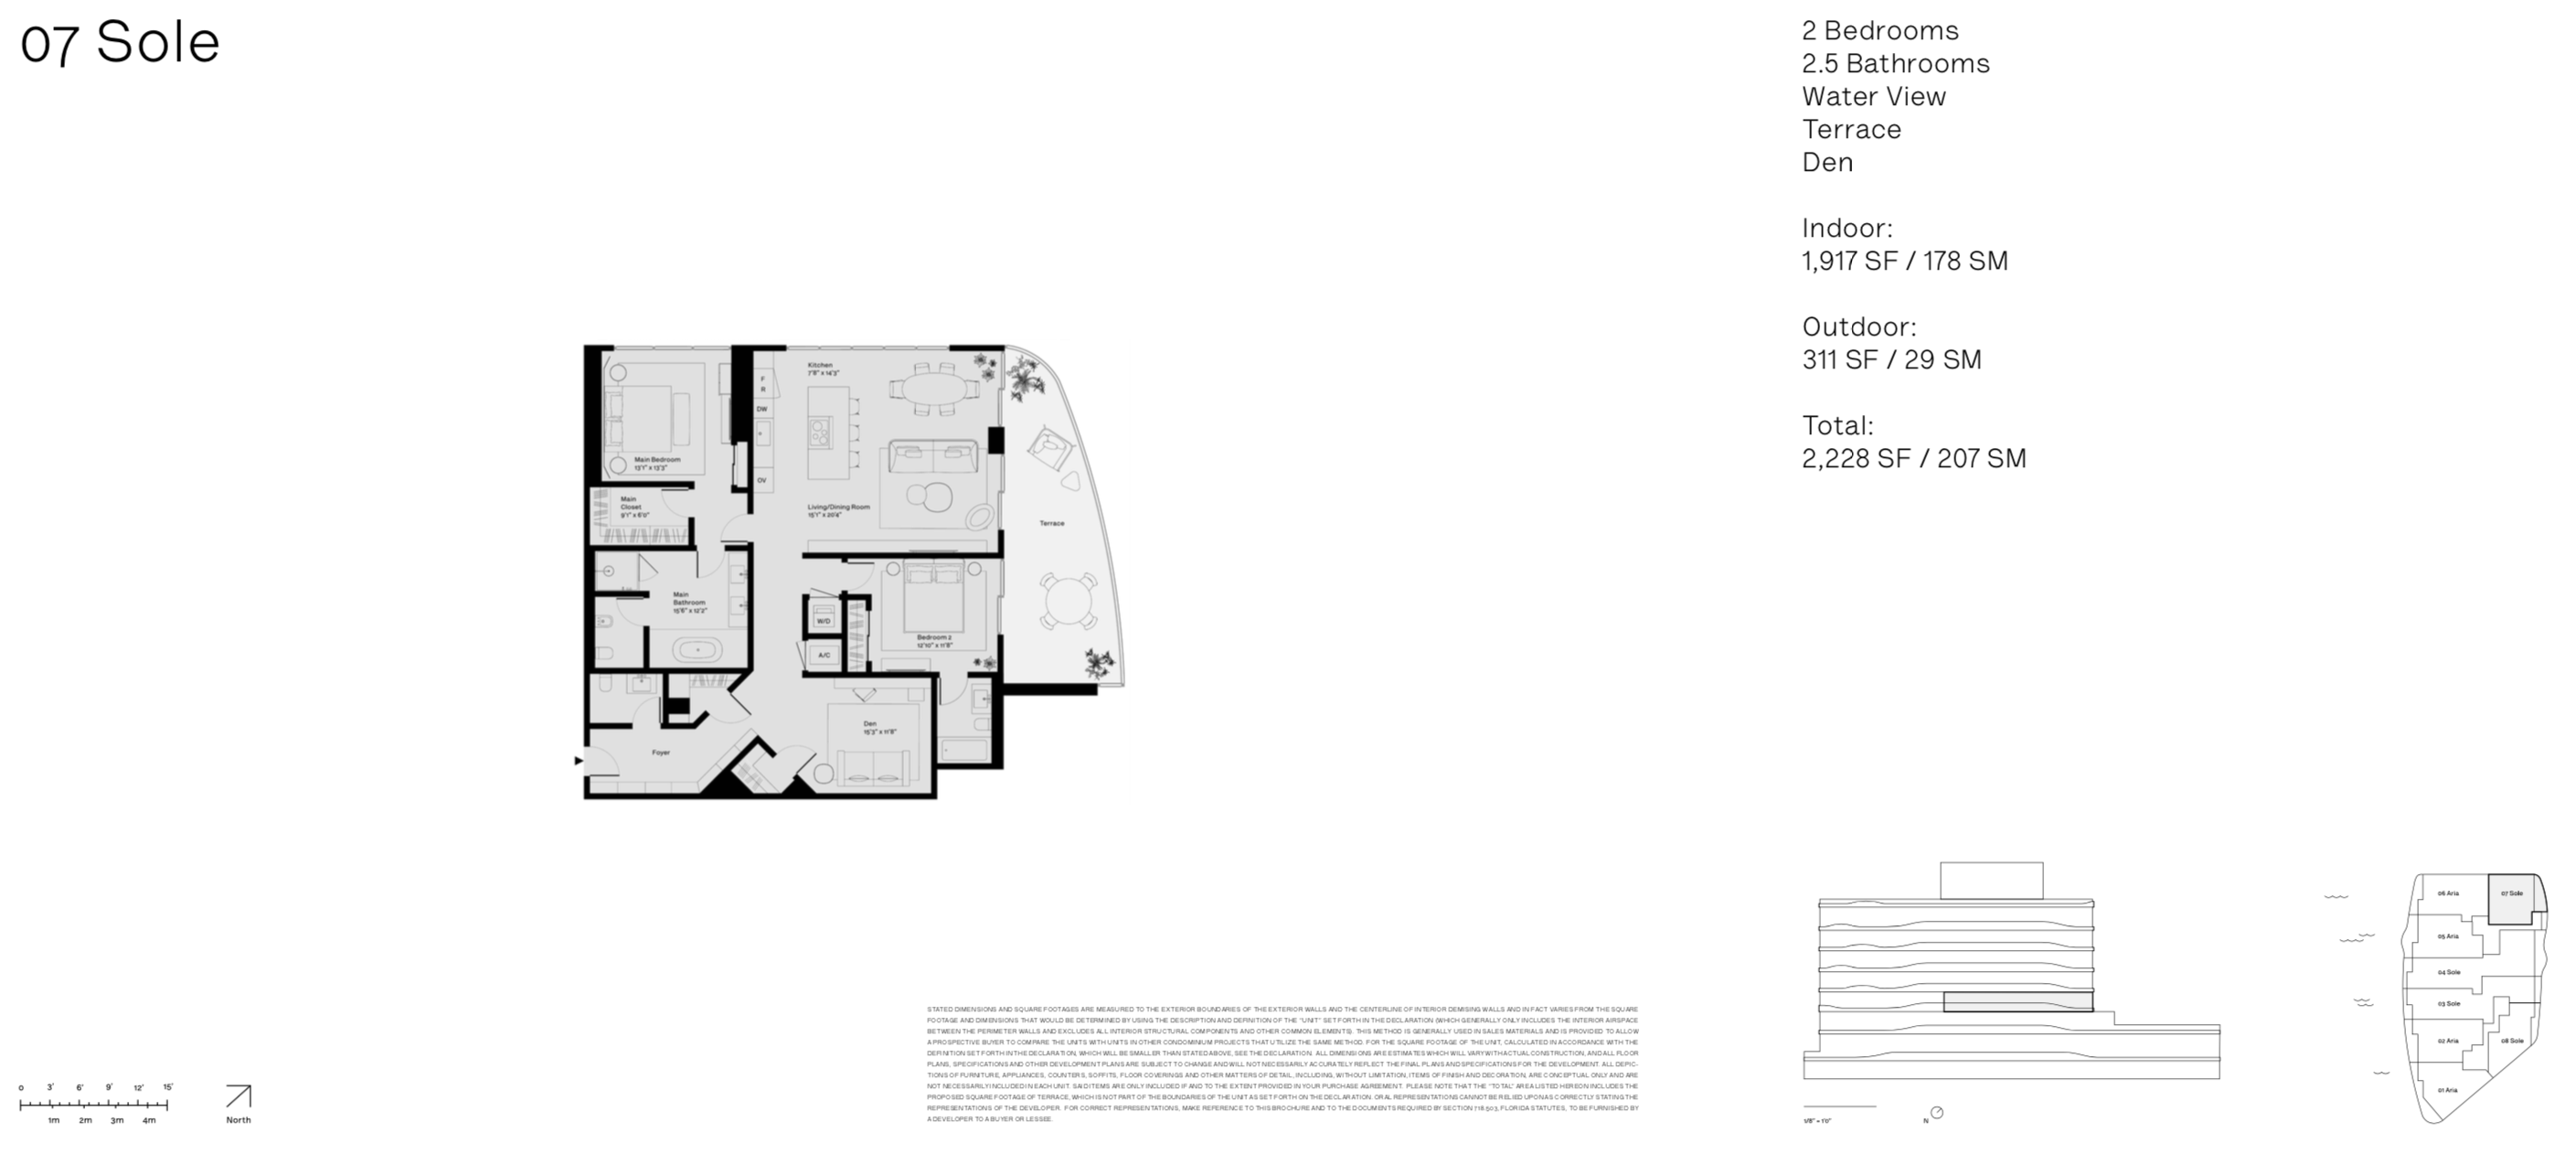 Onda Residences | Sole 07 Line |  Floor 4 | 2 Be + den | 2.5 Ba | Waterviews | 1,917 SF | Terrace